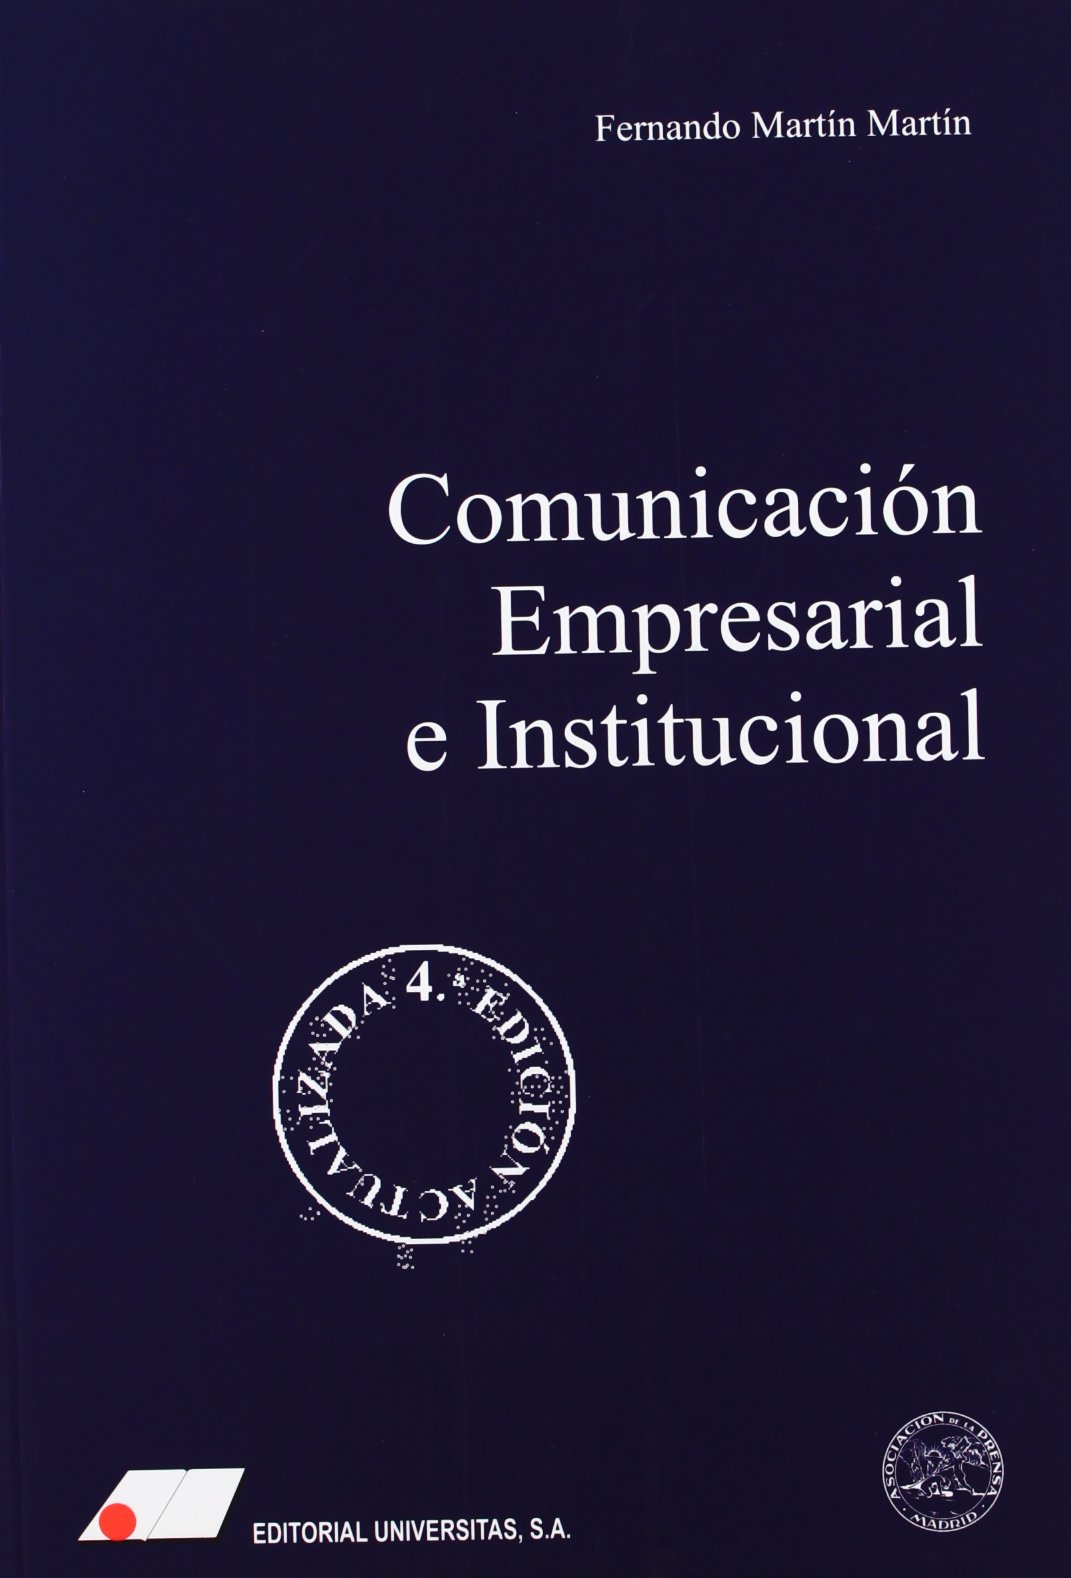 Comunicación empresarial (corporativa) e institucional. 9788479911867